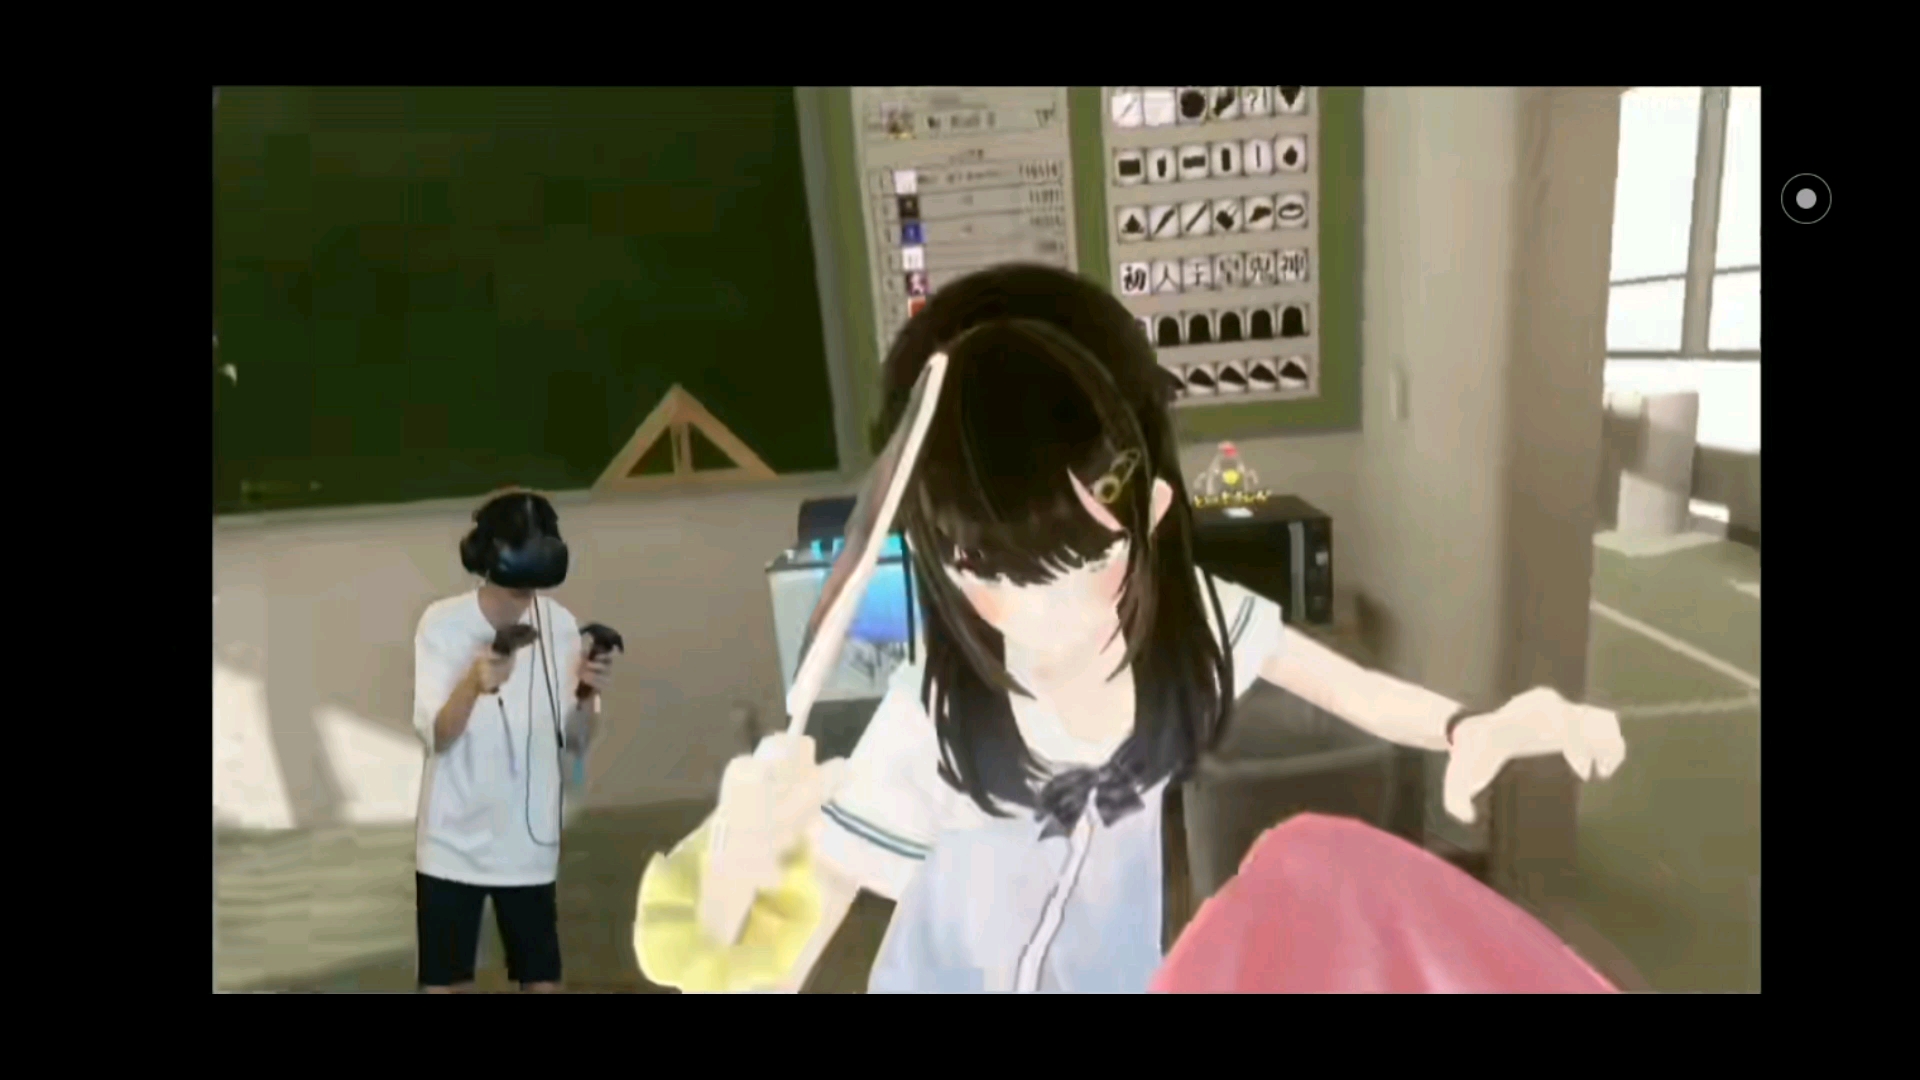 补档(徐大虾的VR游戏)